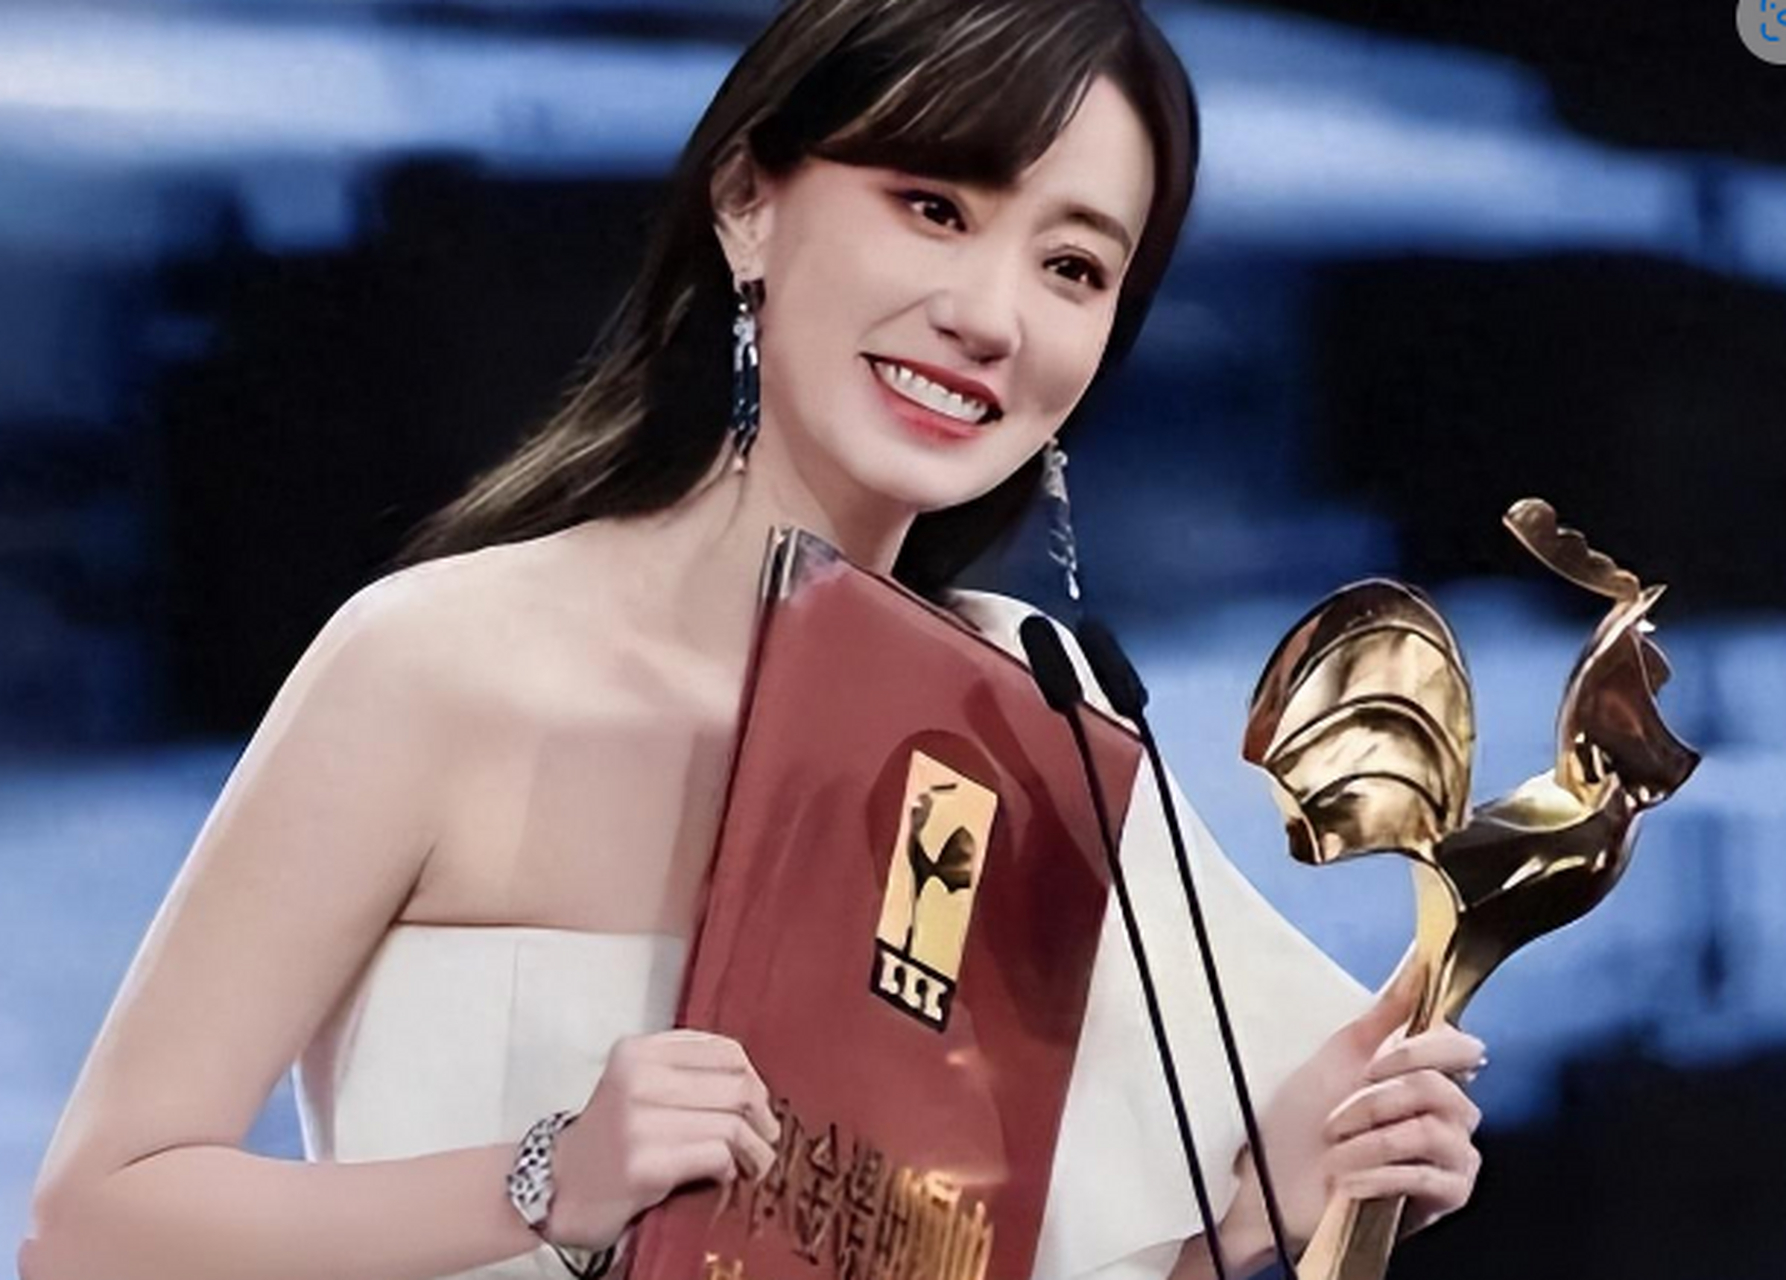 张小斐因主演《你好,李焕英》而一夜爆红,获得了金鸡奖最佳女主角的